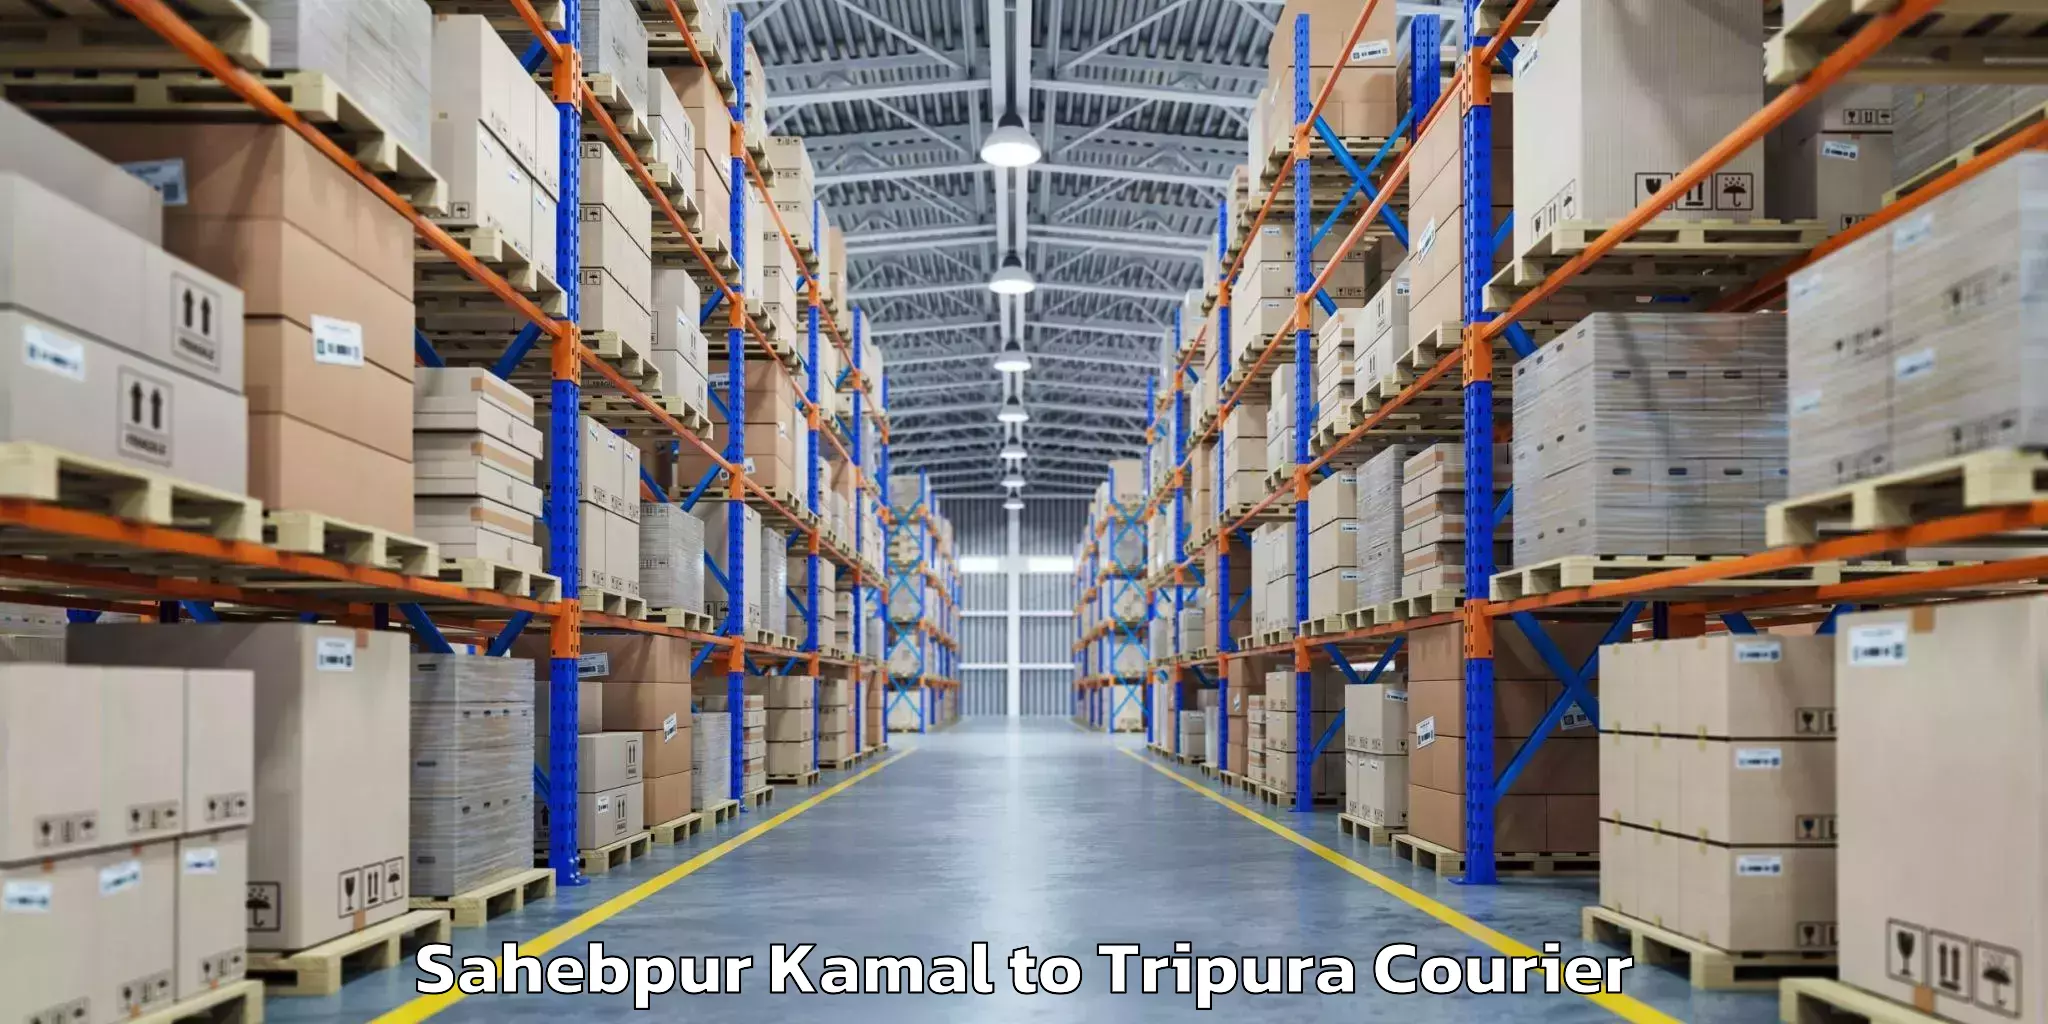 Baggage shipping schedule Sahebpur Kamal to Agartala